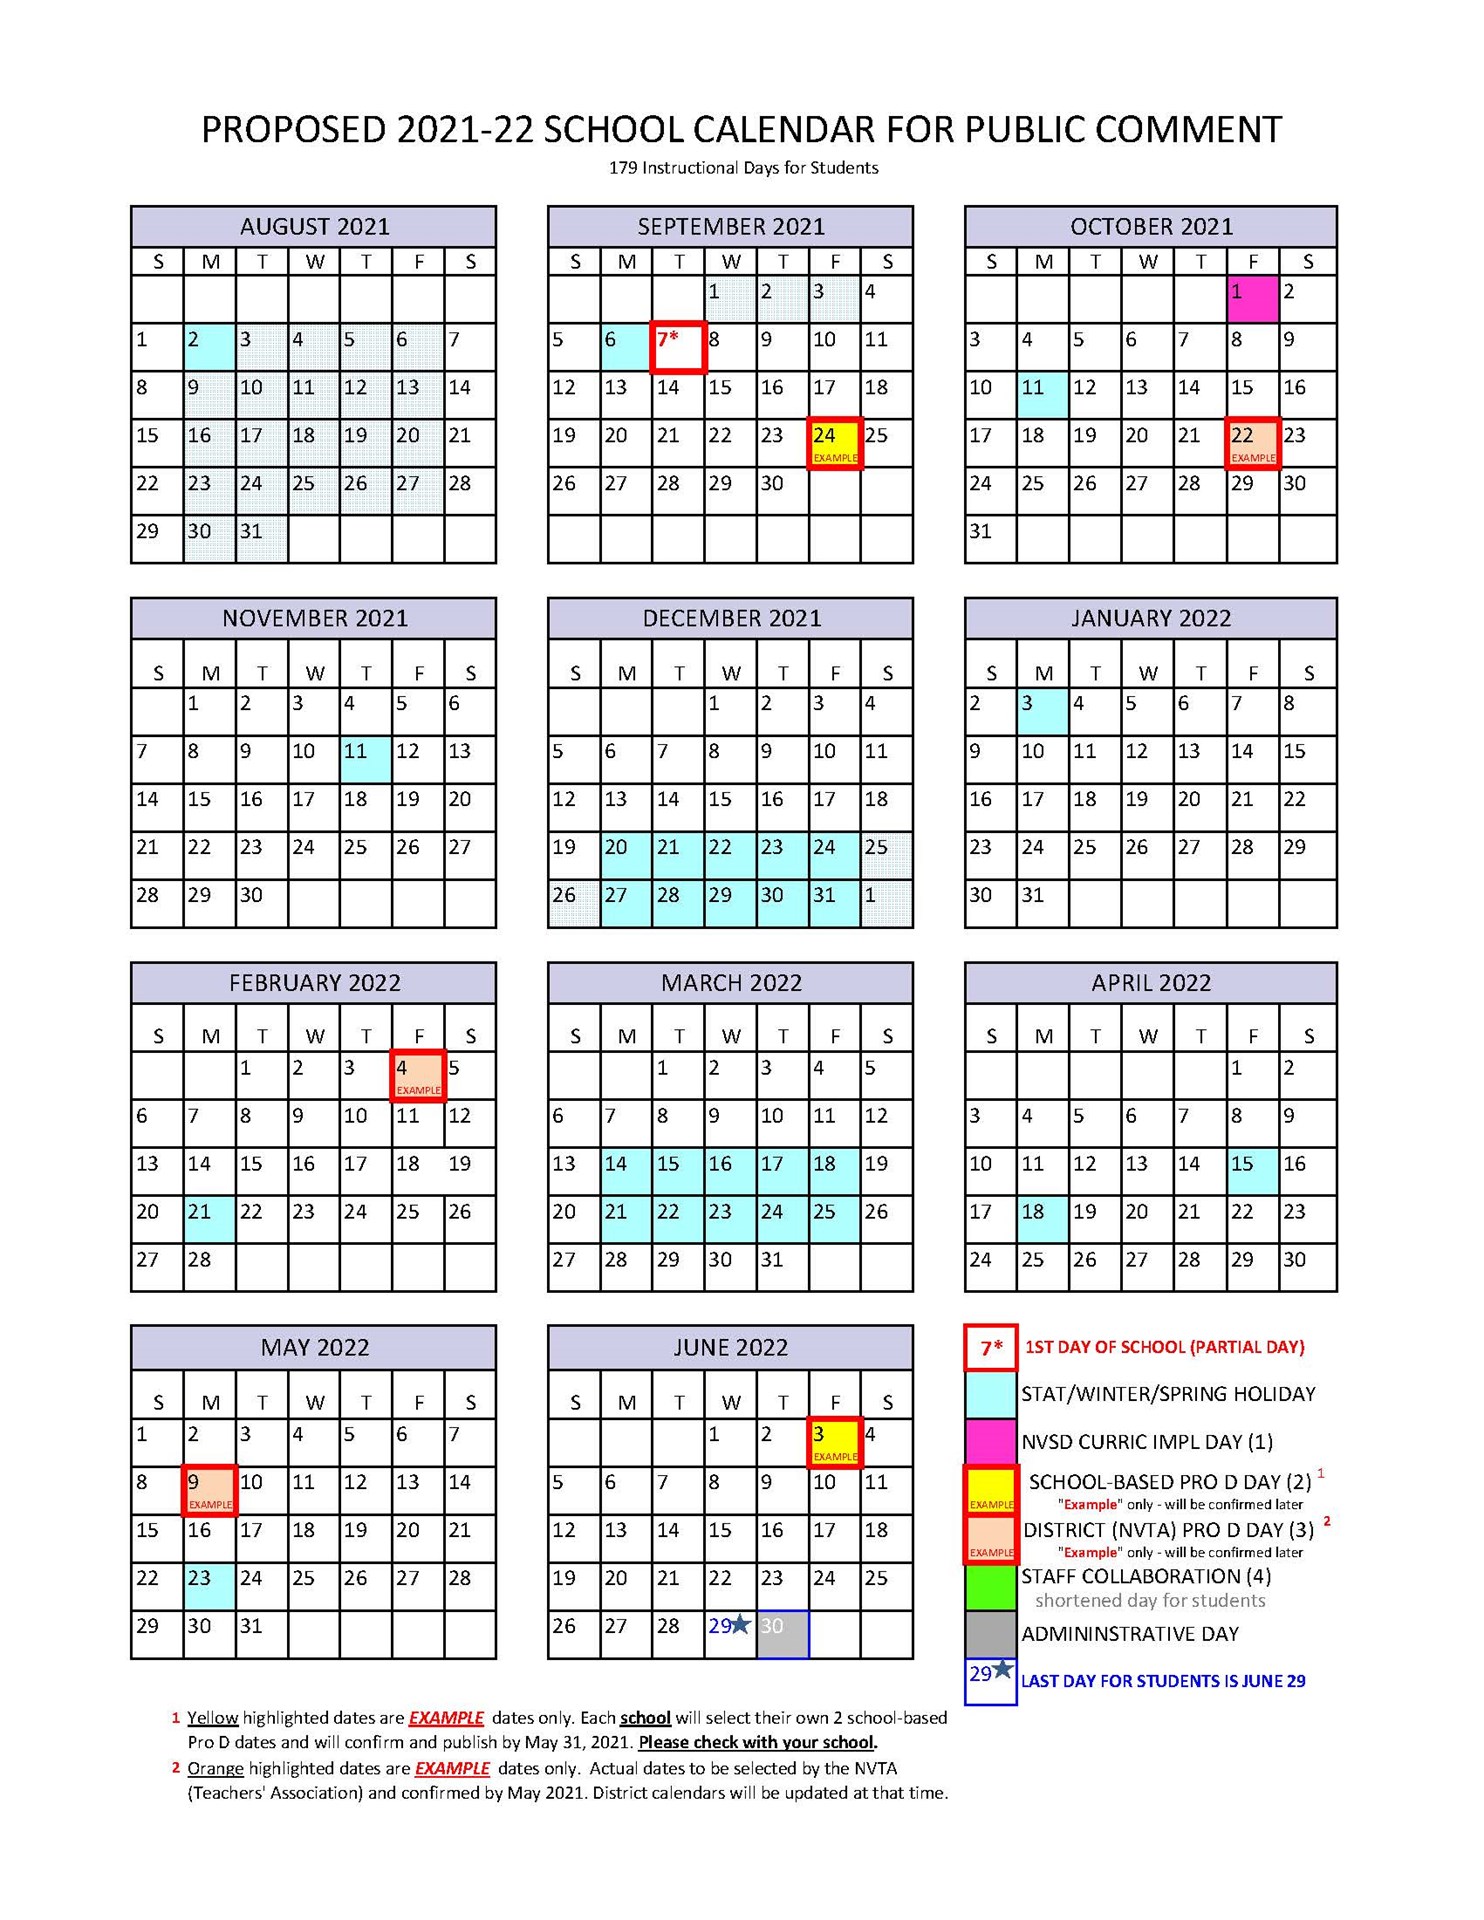 Columbia Public Schools Calendar 2019 2020